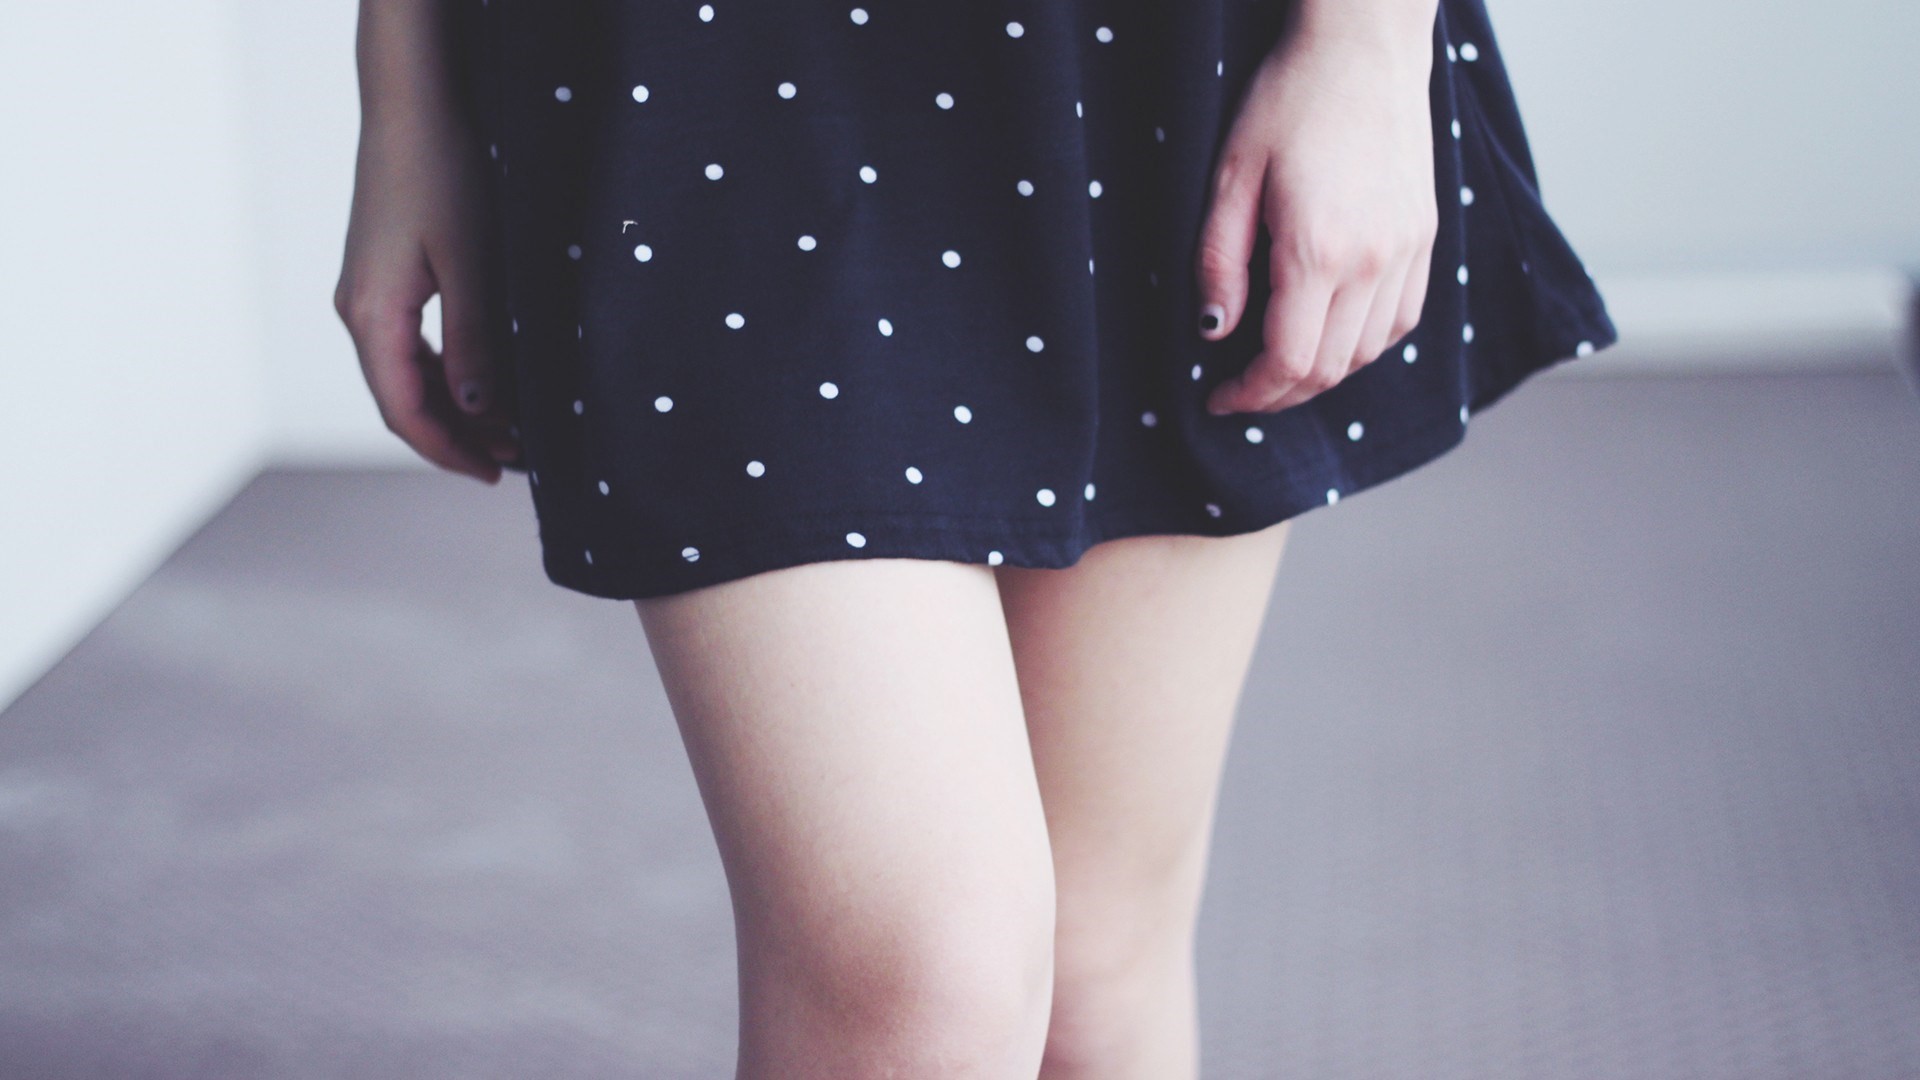 People 1920x1080 legs skirt polka dots women model